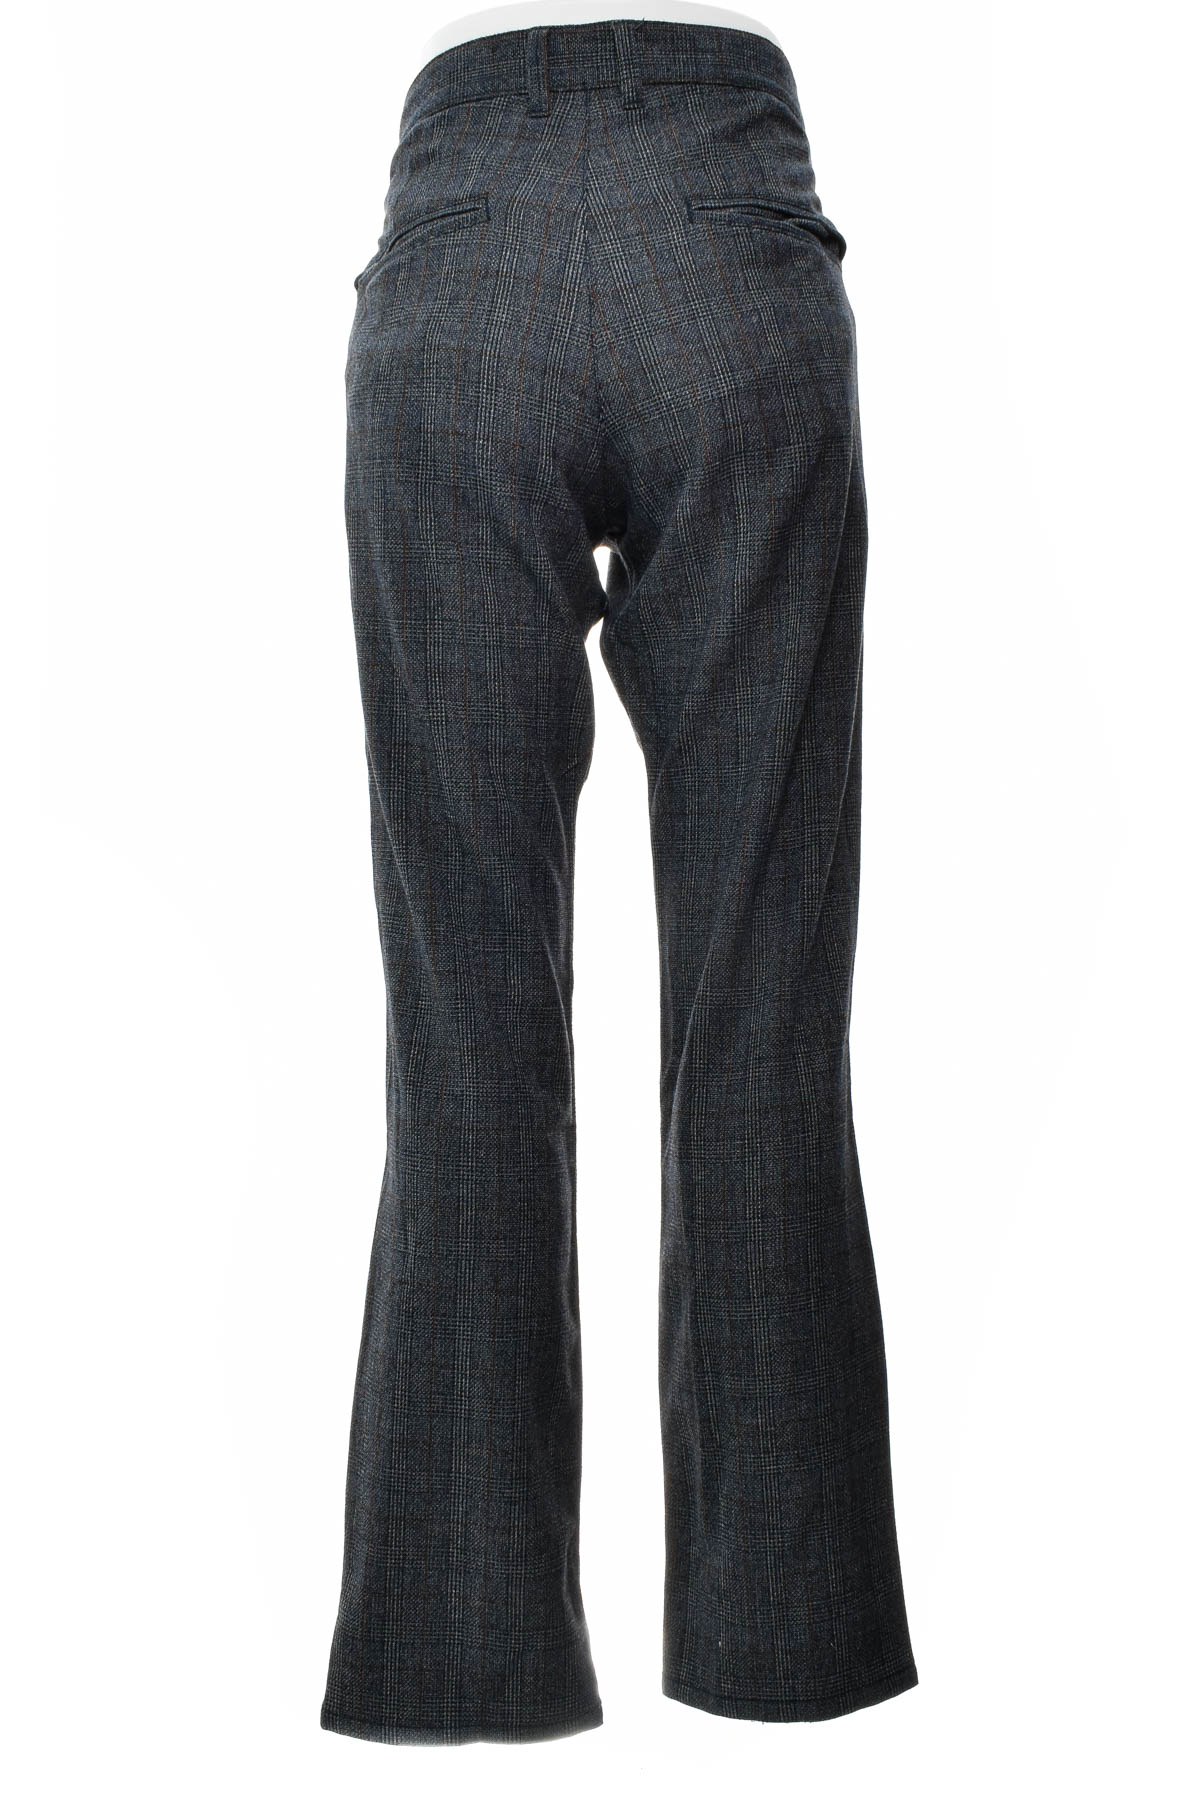 Pantalon pentru bărbați - TOM TAILOR Denim - 1